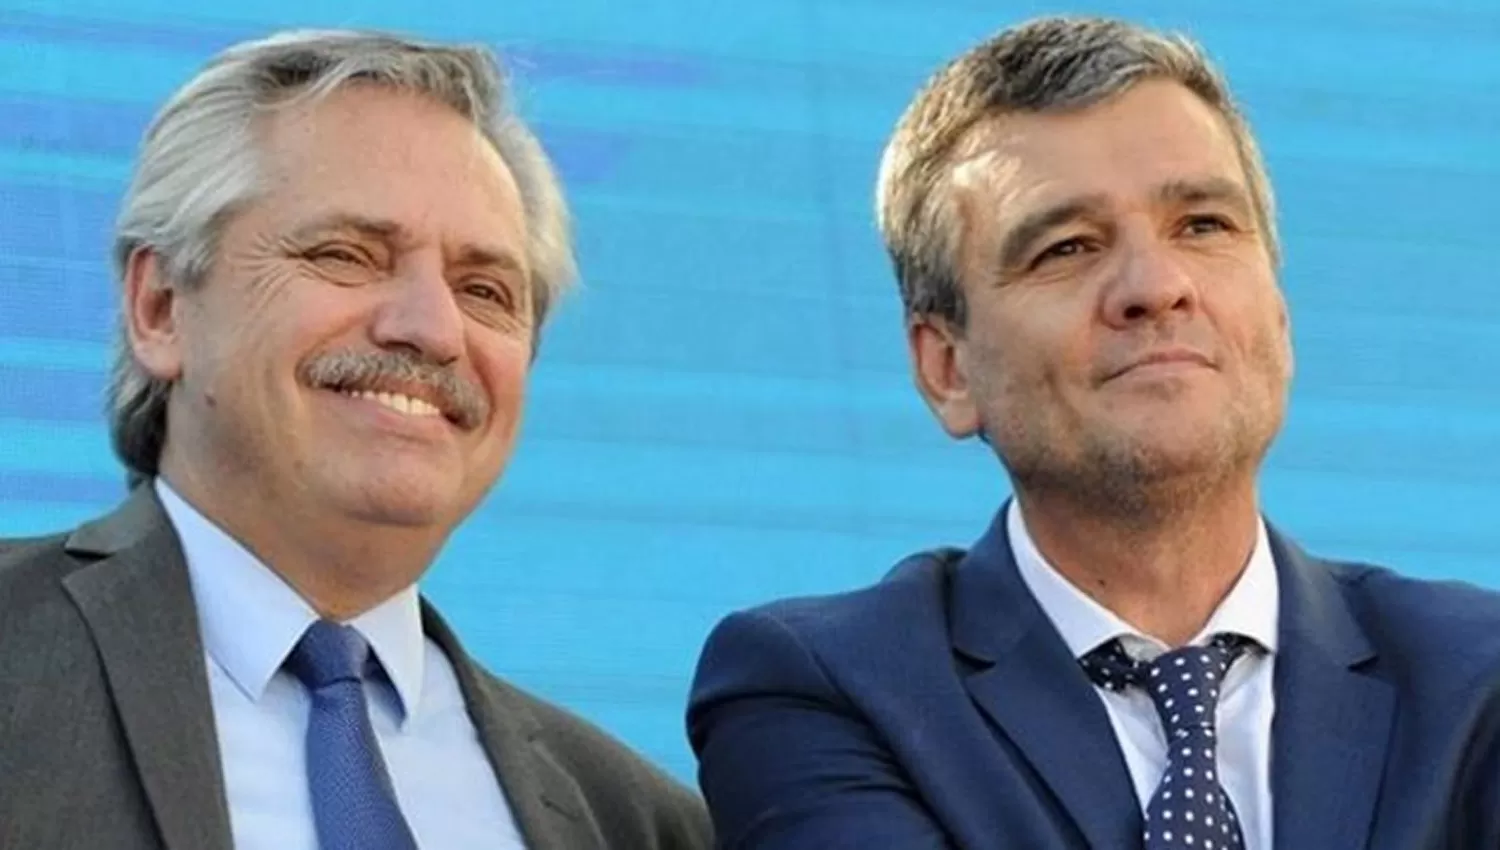 JUNTOS. El presidente Alberto Fernández y el futuro ministro de Desarrollo Social, Juan Zabaleta.